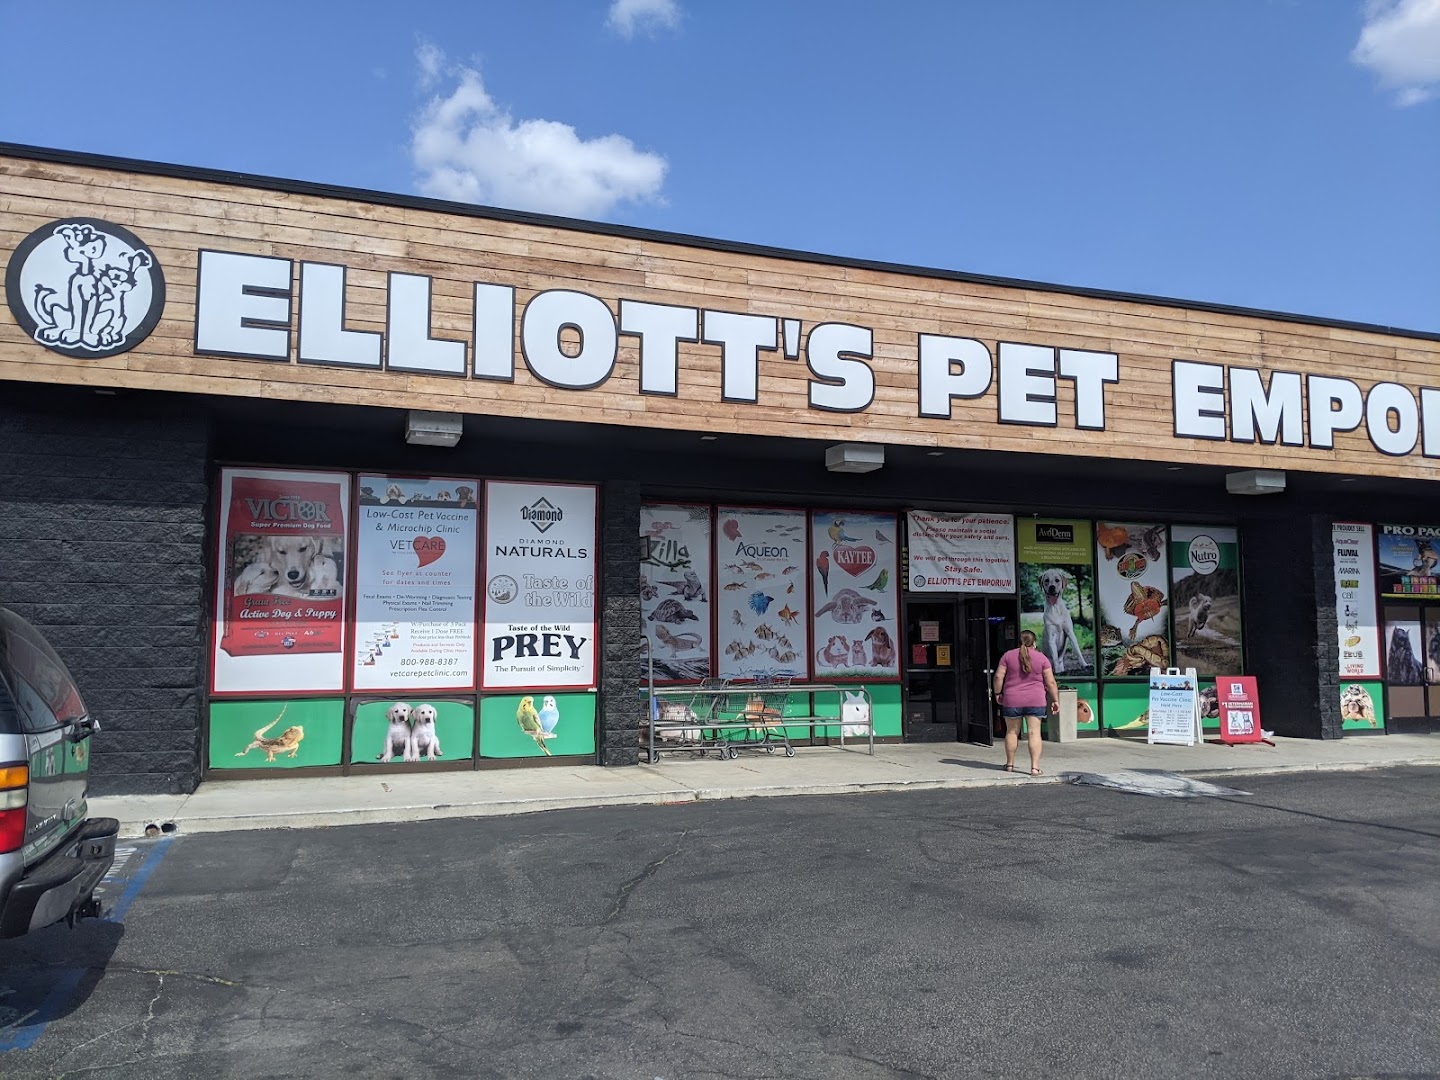 Elliott's Pet Emporium